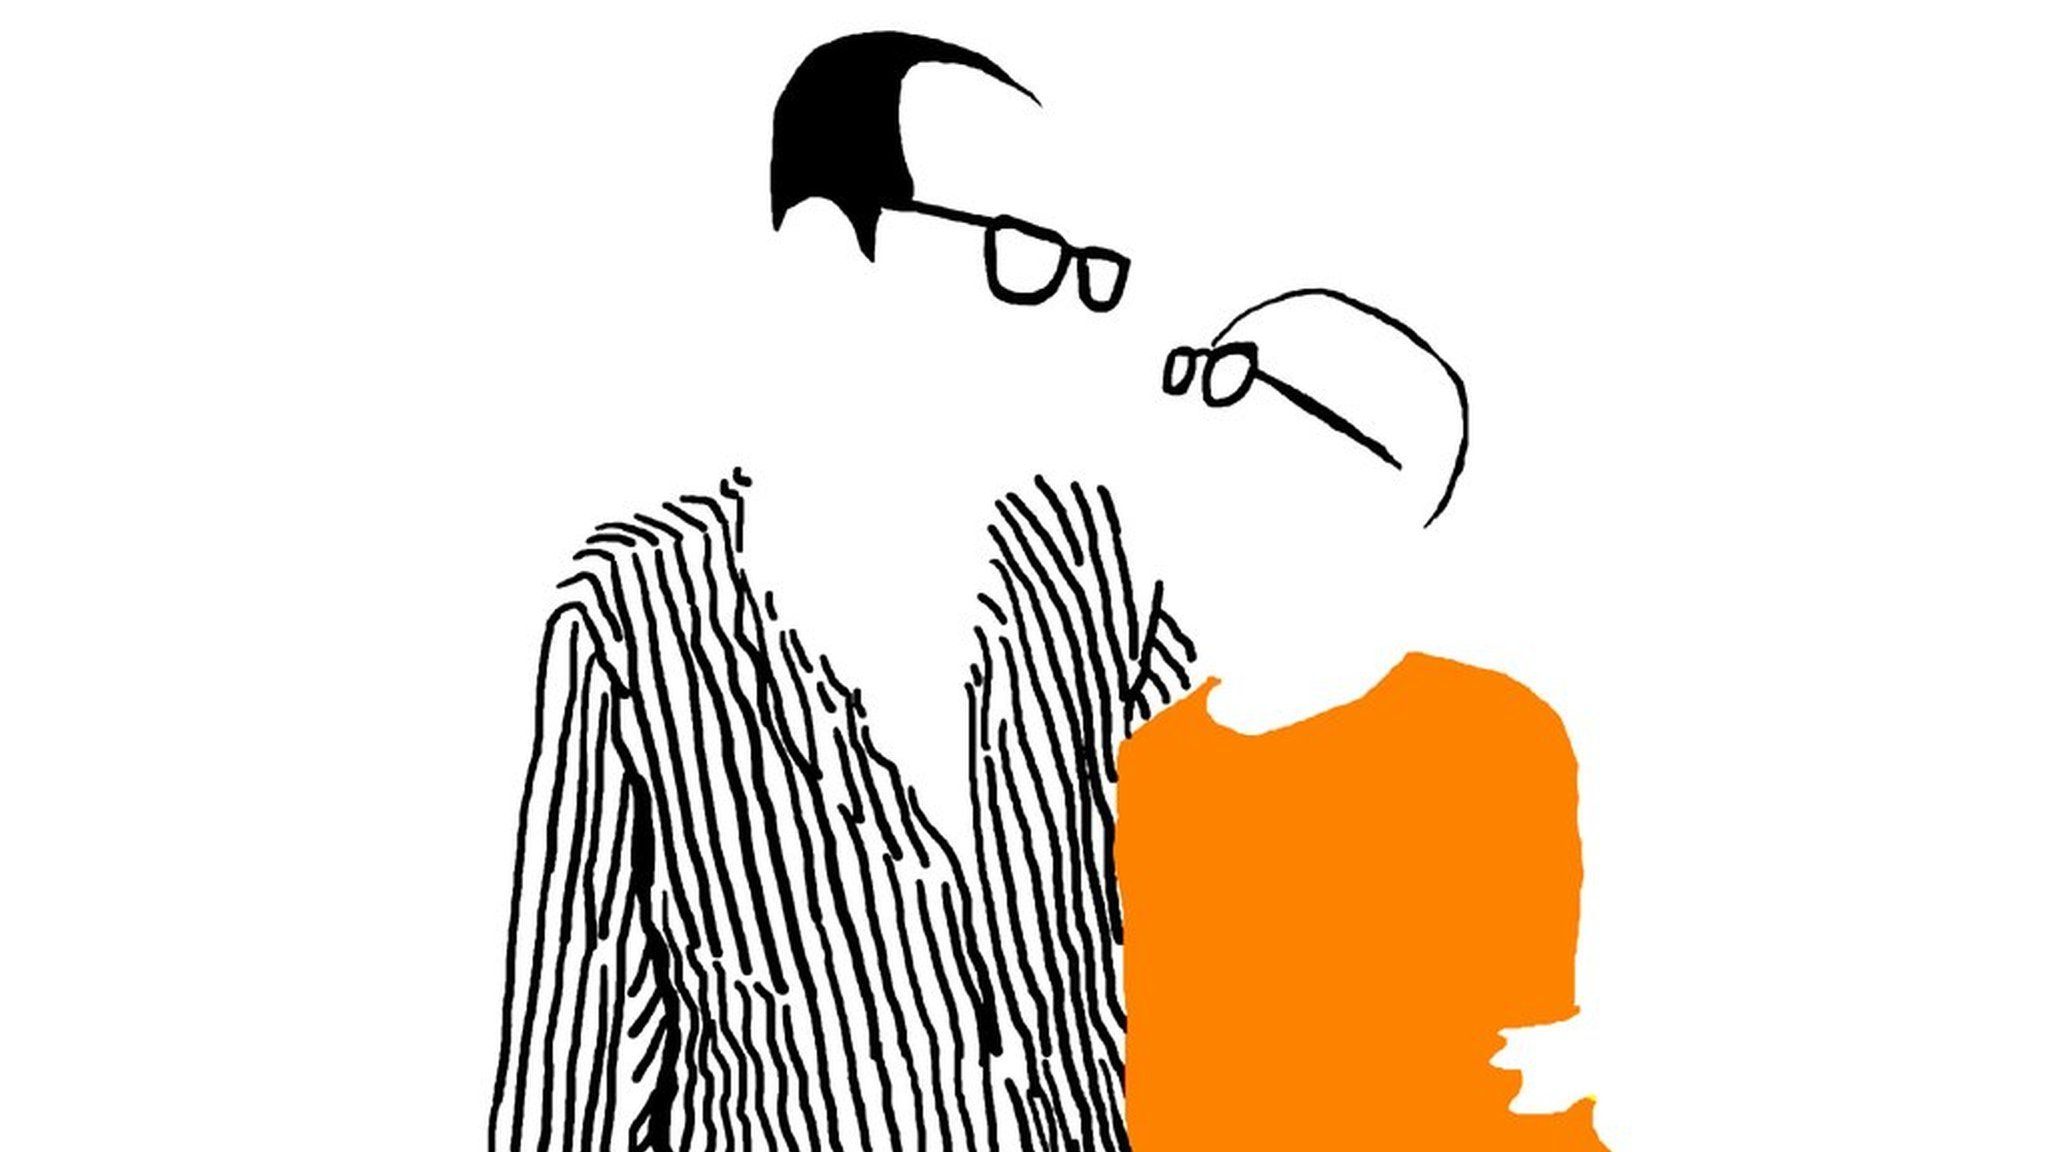 Artwork depicting Liu Xiaobo and Liu Xia